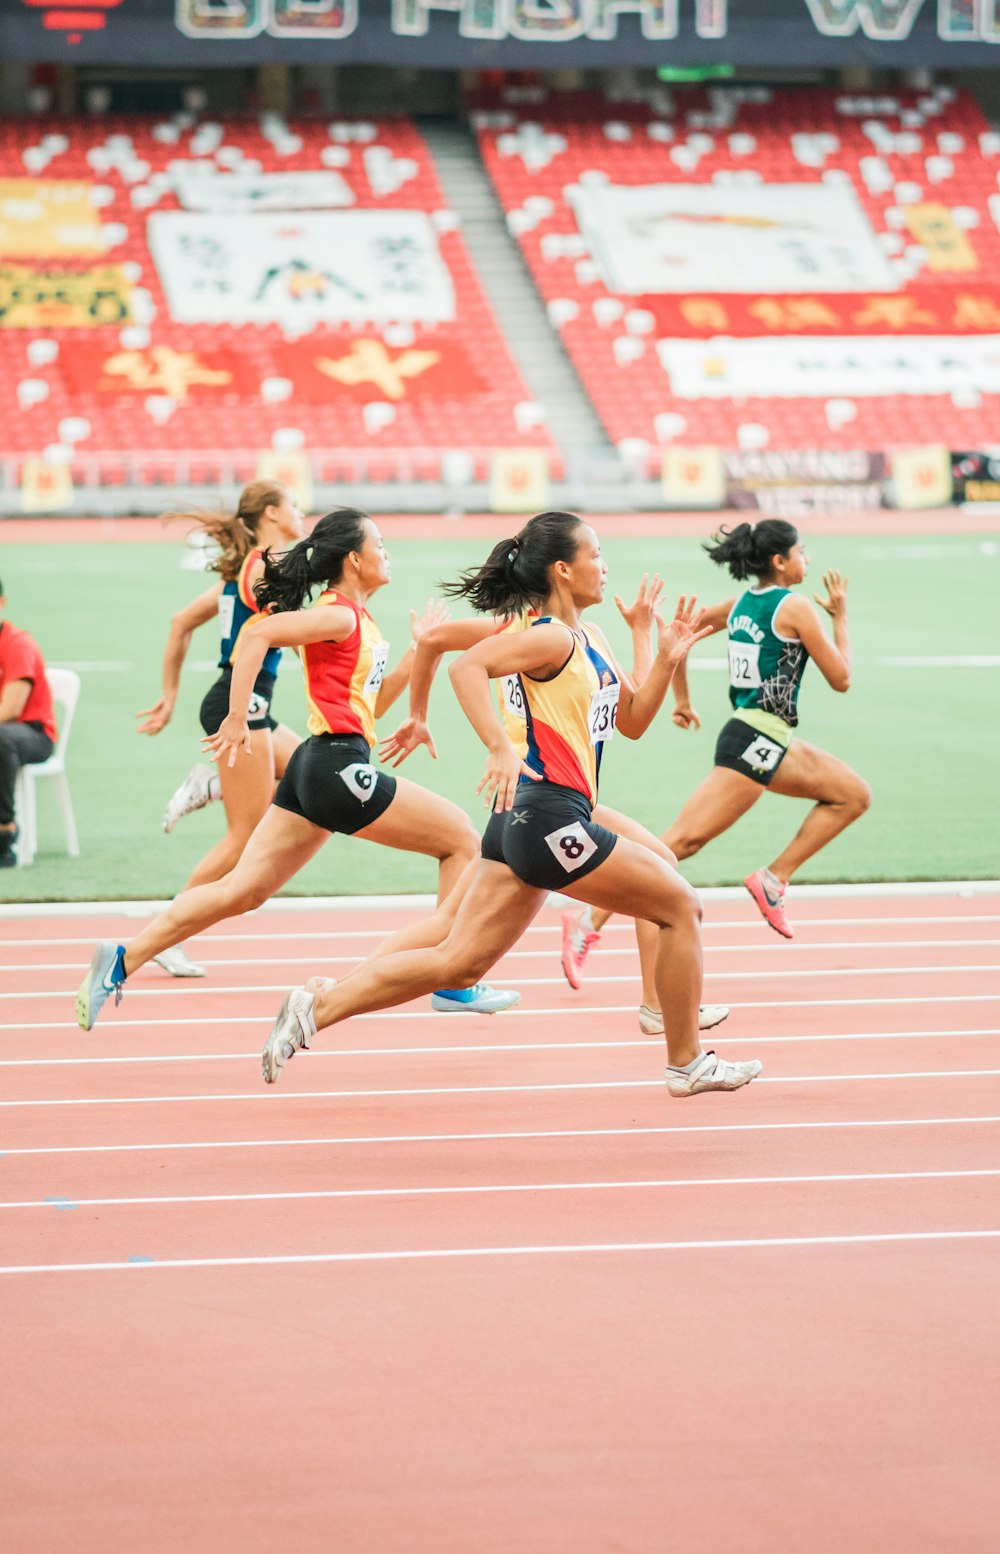 Imágenes de Running Women  Descarga imágenes gratuitas en Unsplash